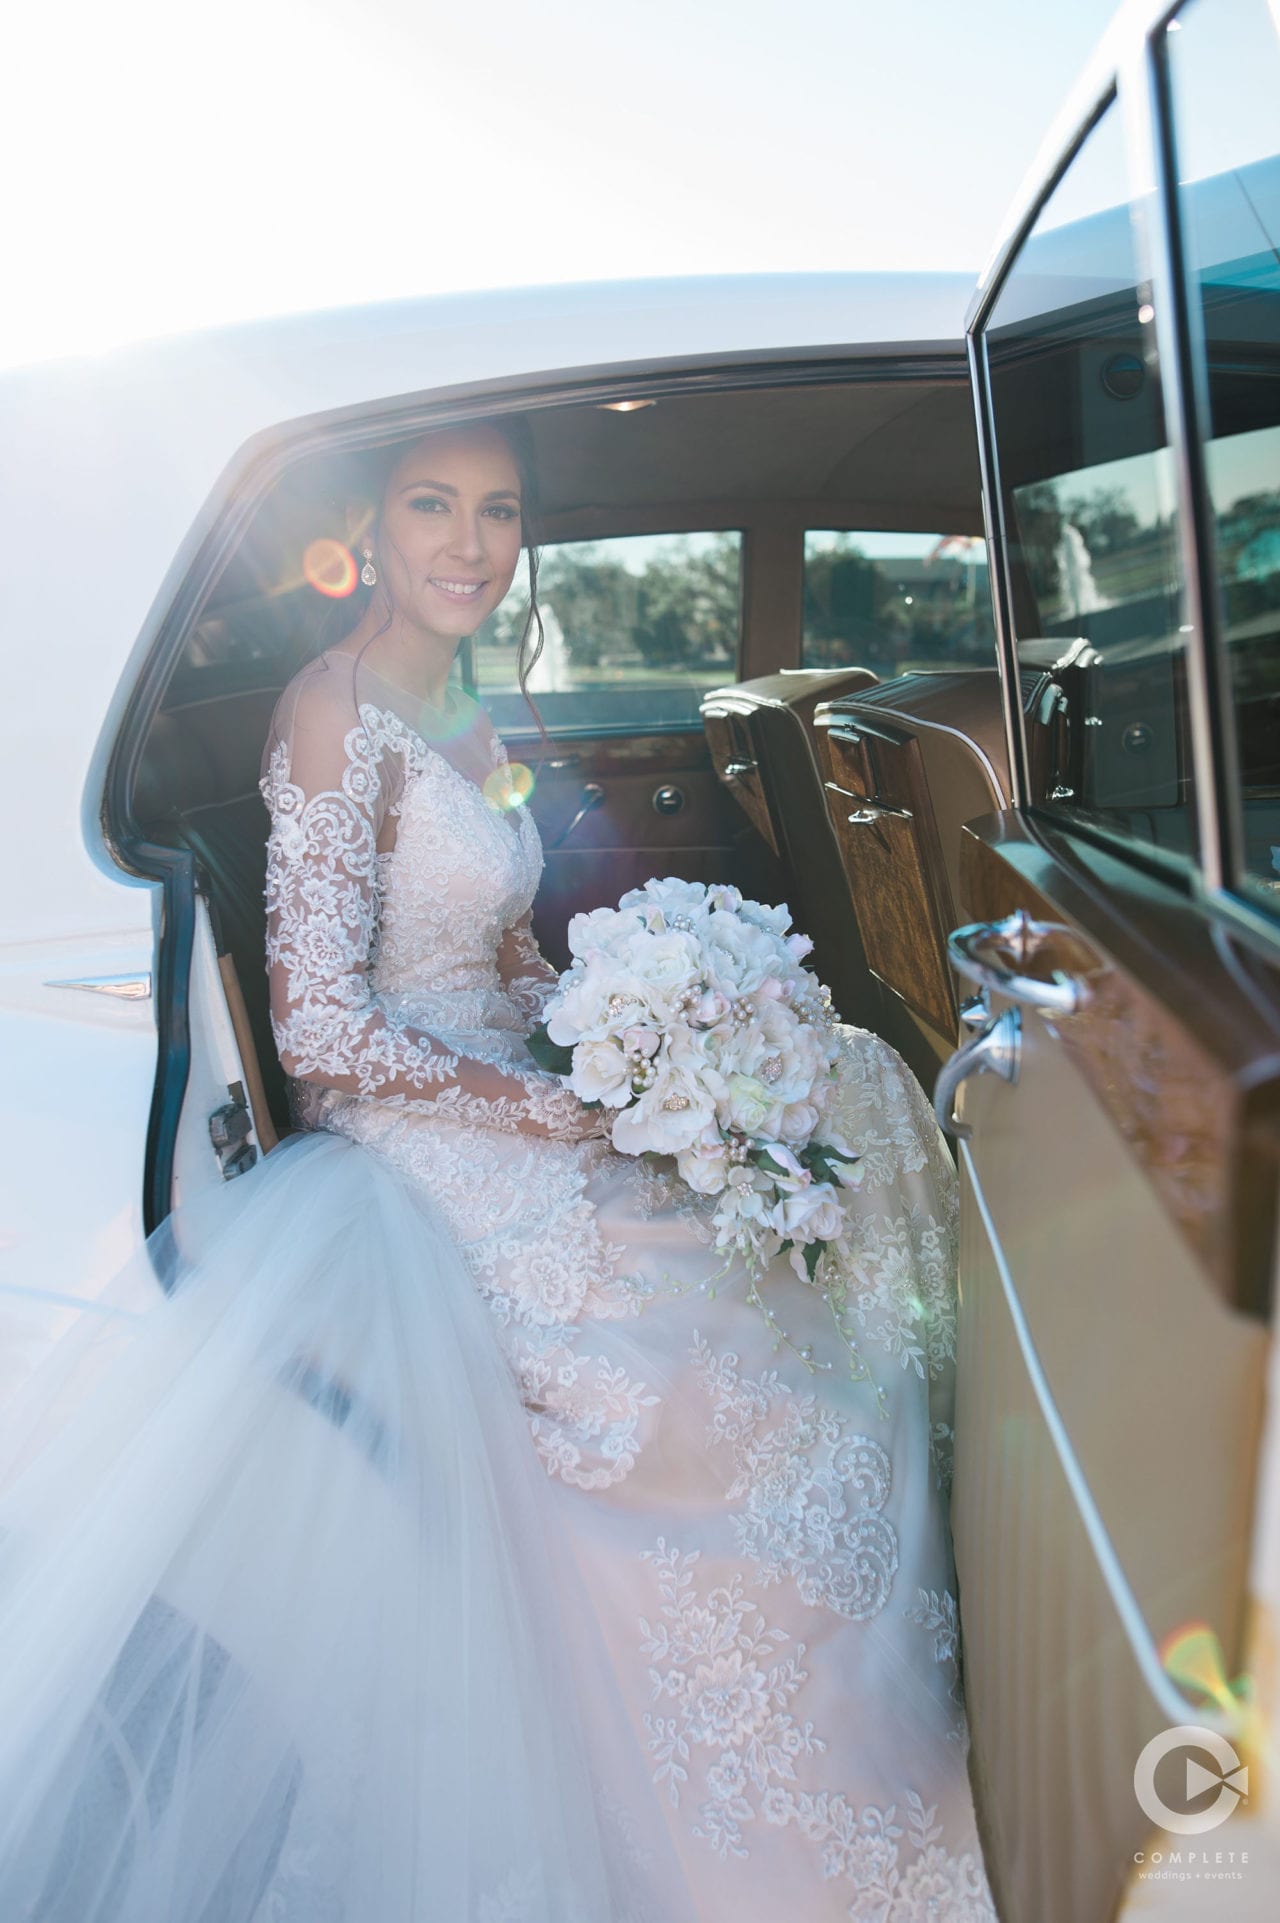 Wedding Car Rentals in San Diego